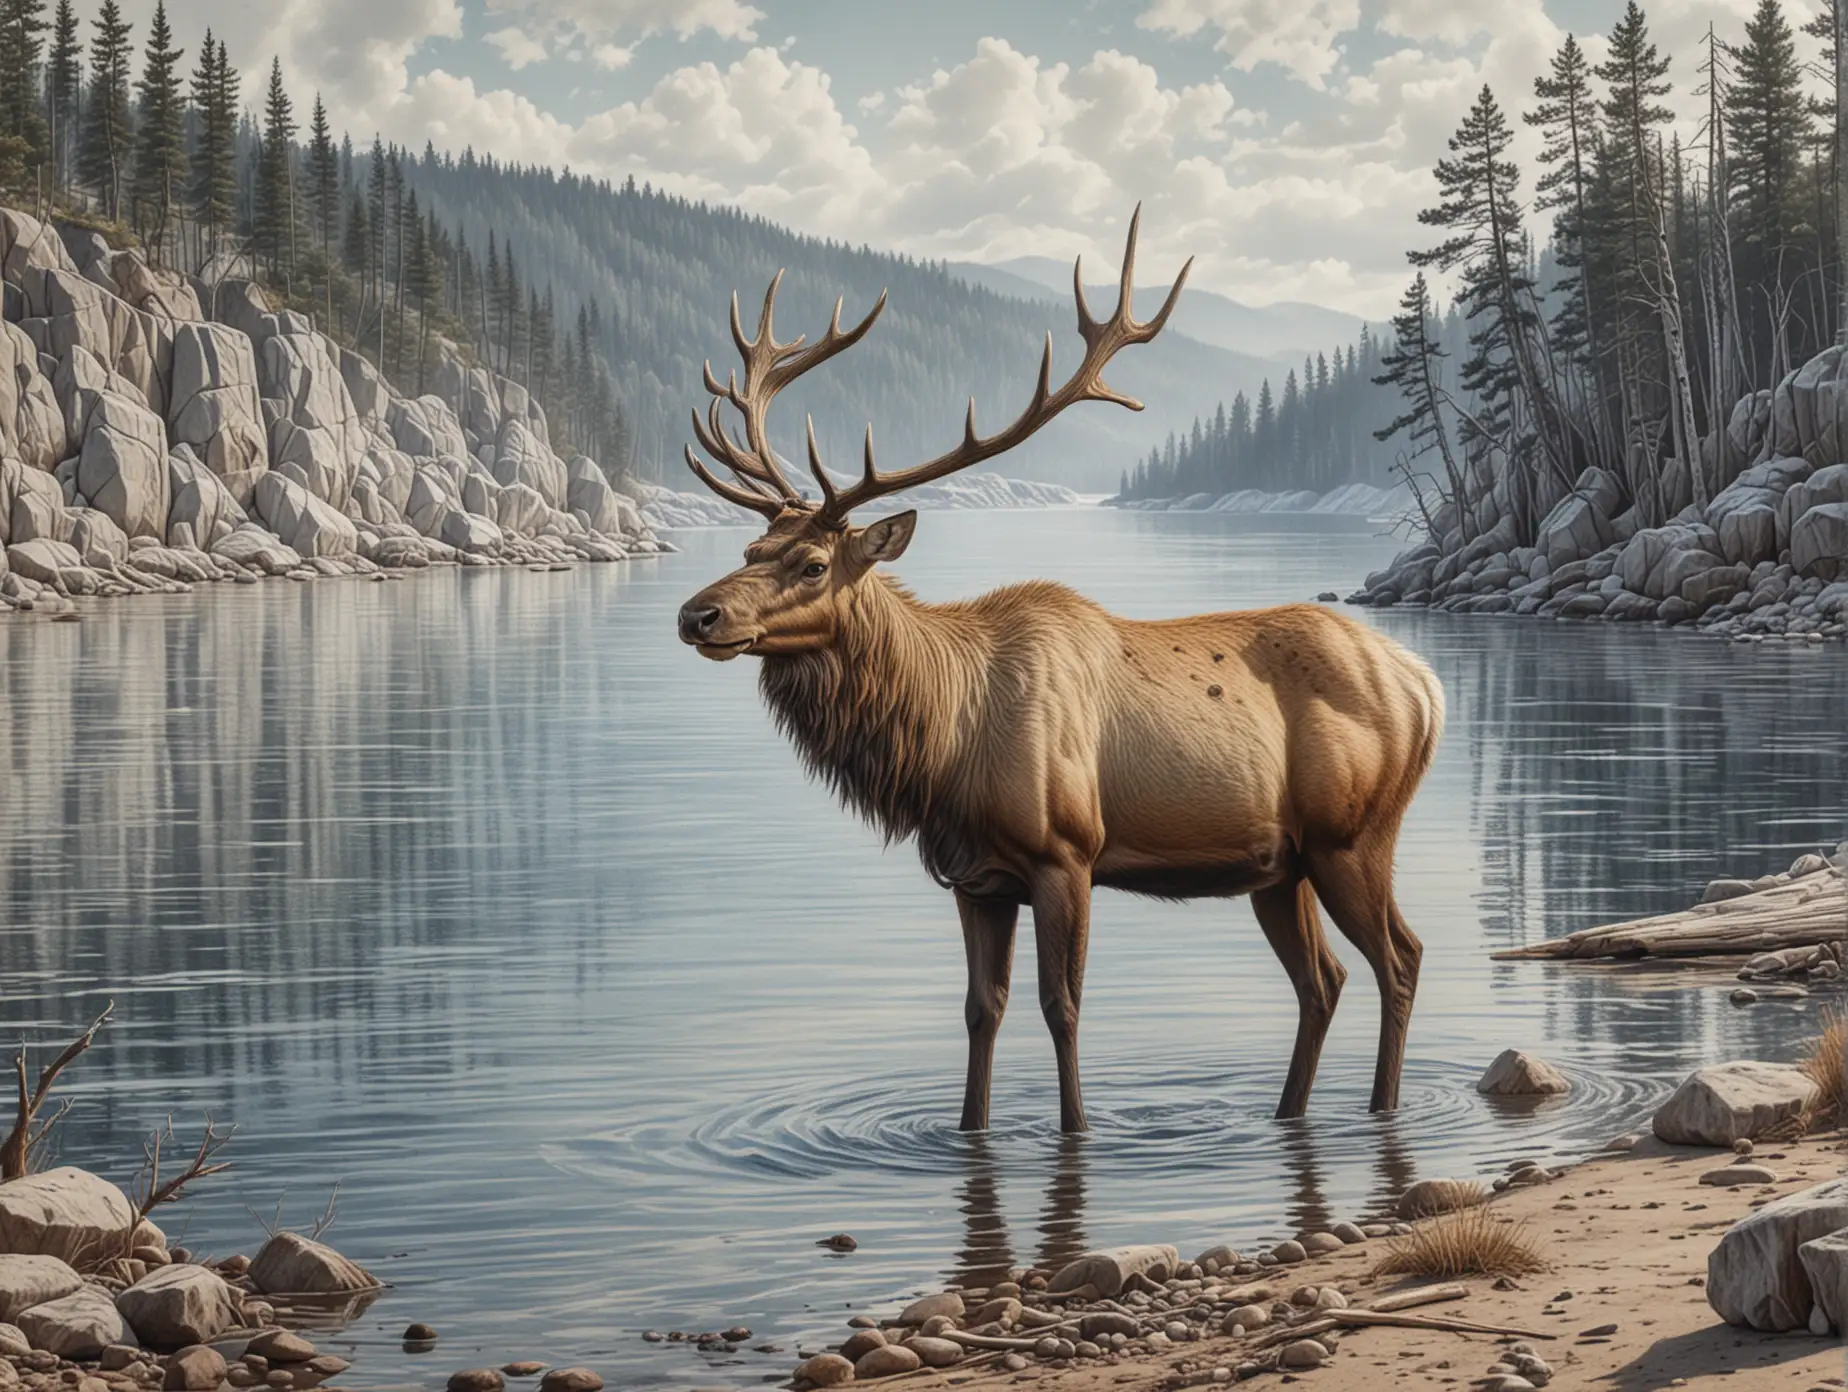 реалистичный рисунок в стиле карандашной графики детализированный олень на берегу озера Байкал